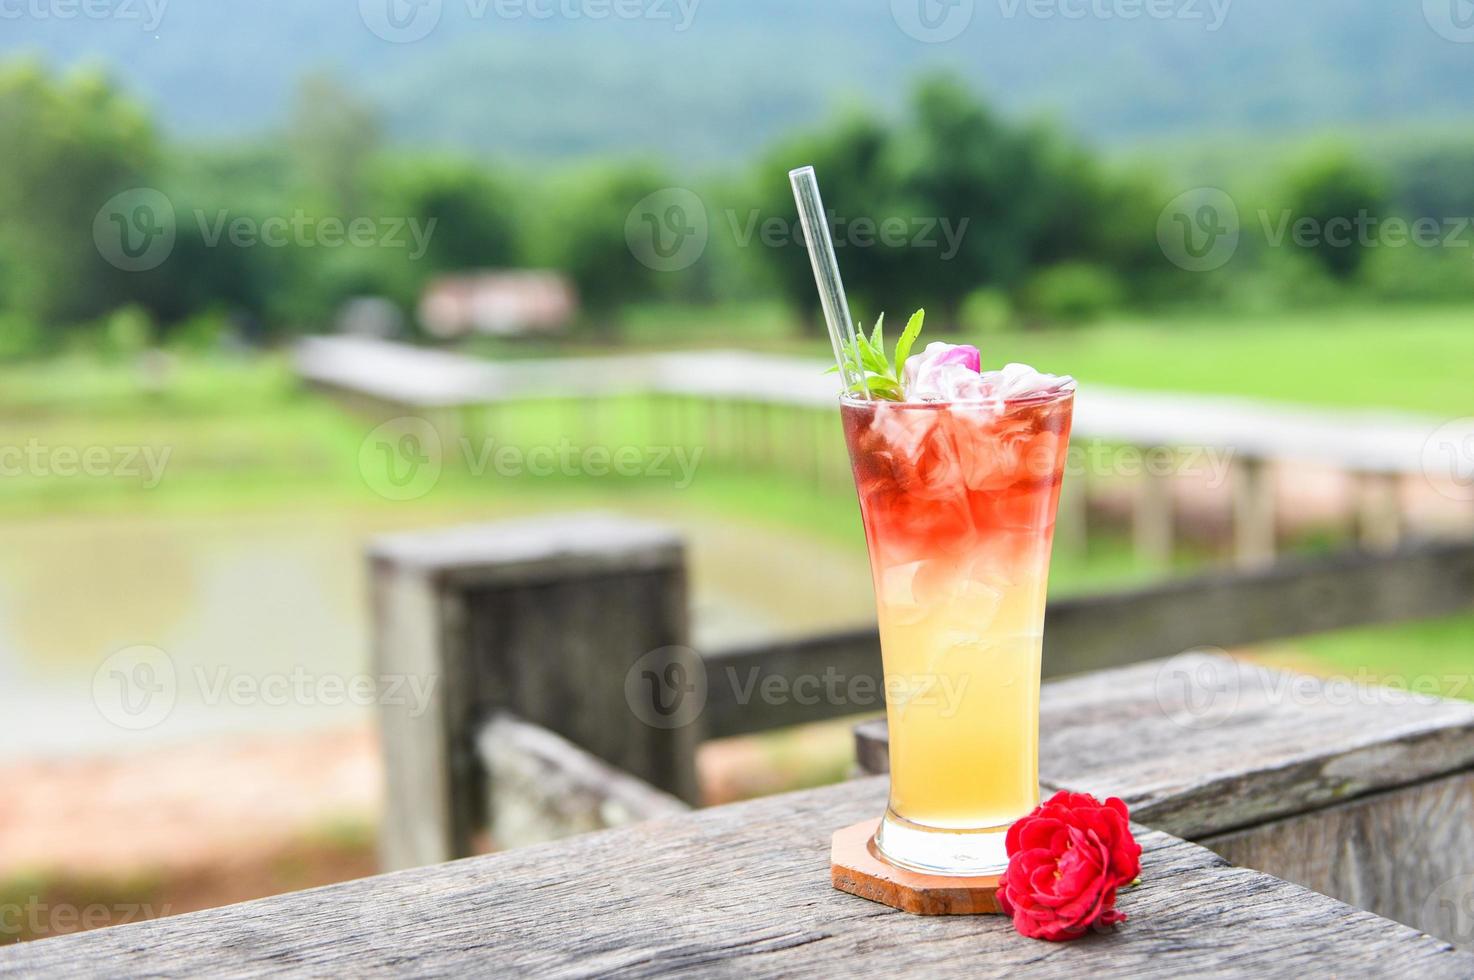 chá gelado com um coquetel de rosa chá gelado - flores de chá feitas de pétalas de rosa chá em um copo na mesa de madeira e fundo verde natural foto